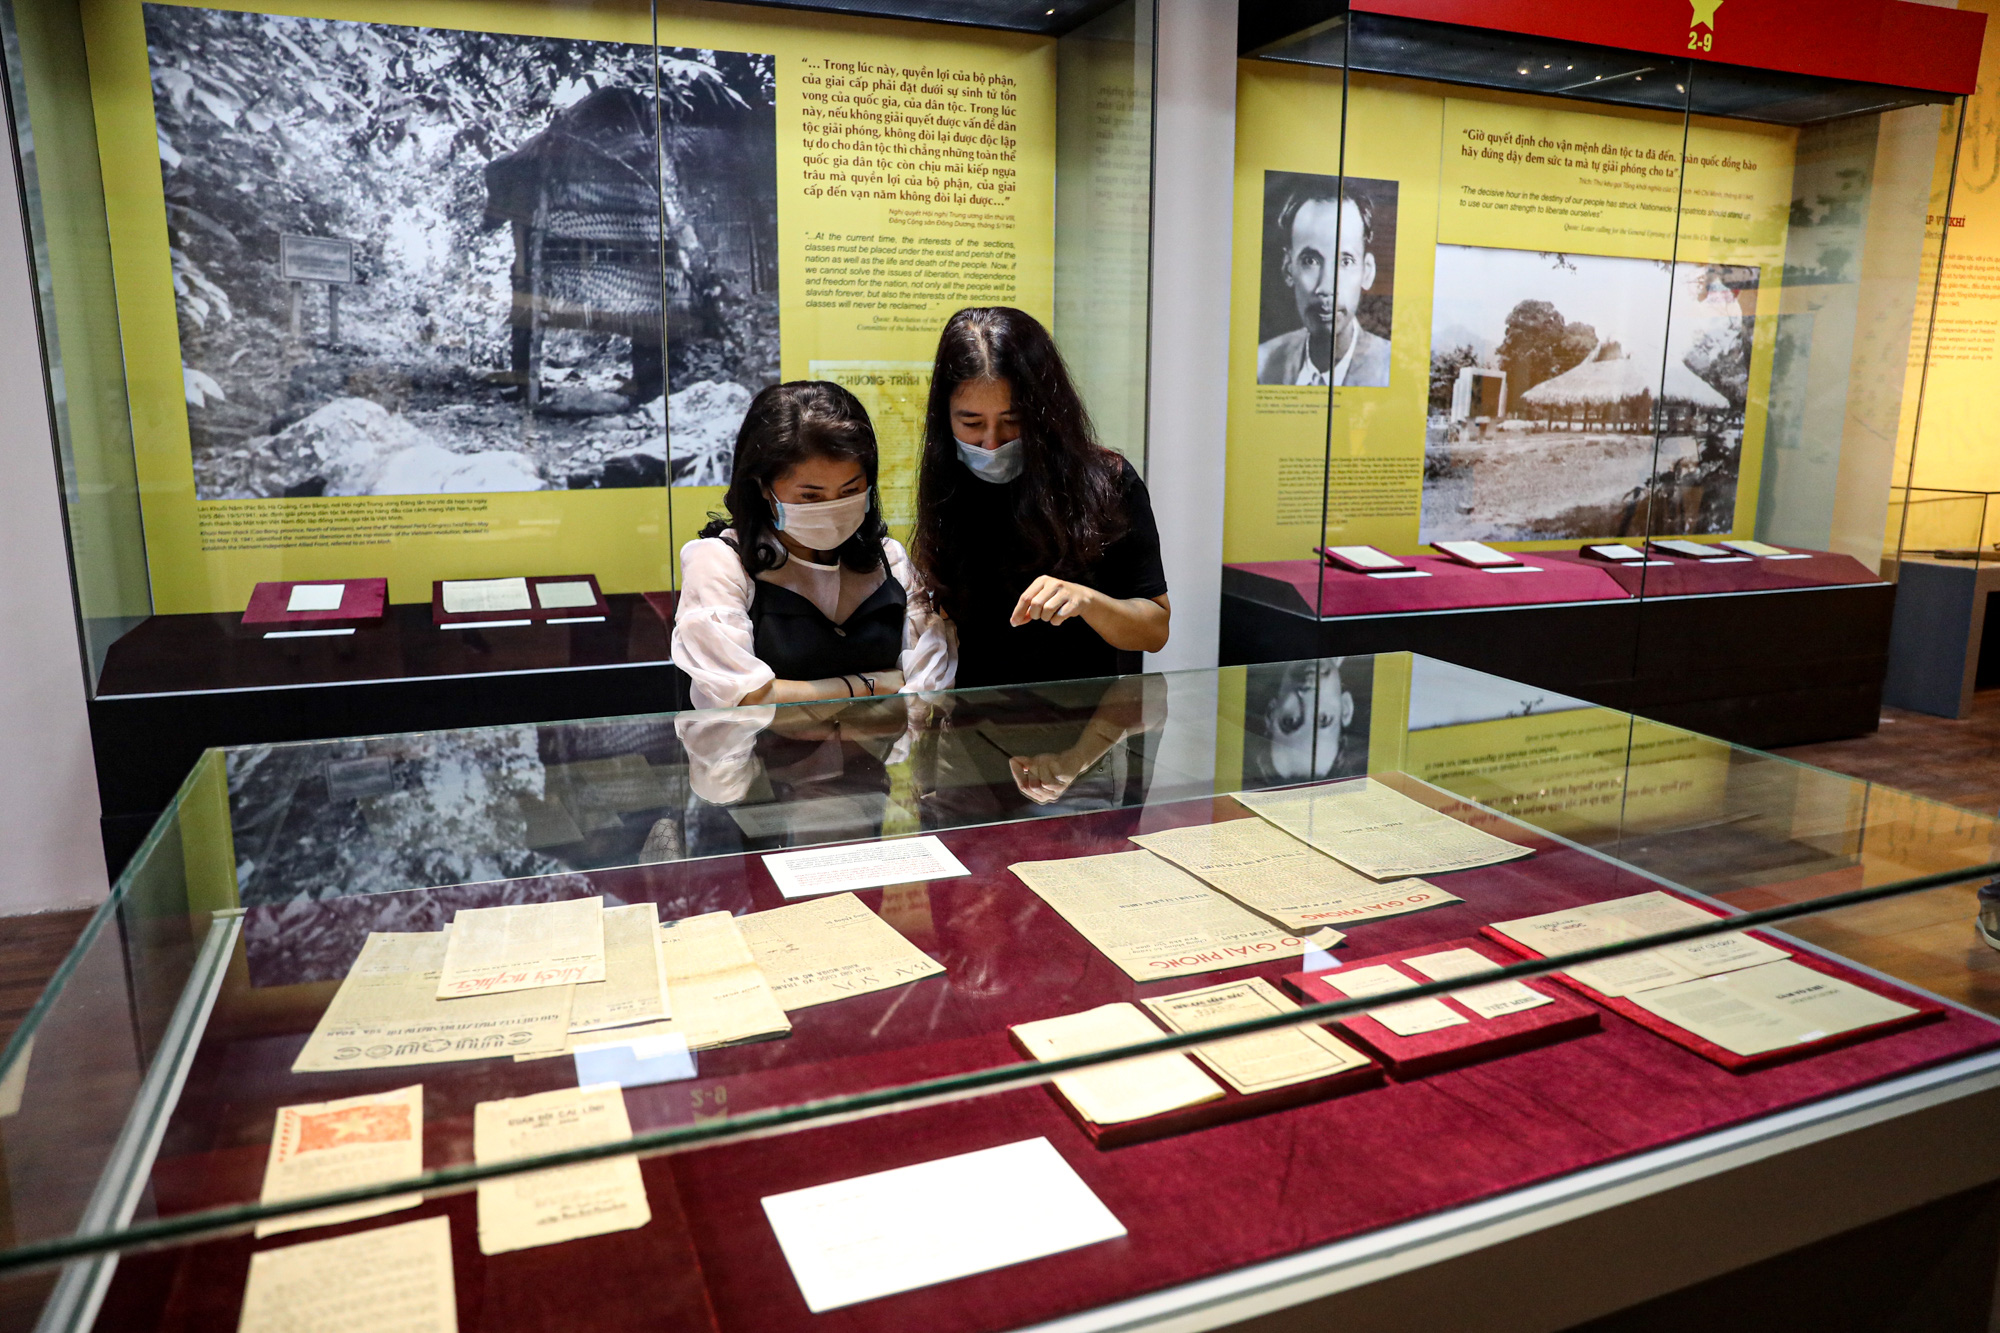 Thông qua trưng bày, Bảo tàng Lịch sử quốc gia mong muốn góp phần giúp cho công chúng, đặc biệt là thế hệ trẻ hiểu rõ hơn về mốc son lịch sử Cách mạng tháng Tám 1945, sức mạnh đại đoàn kết dân tộc